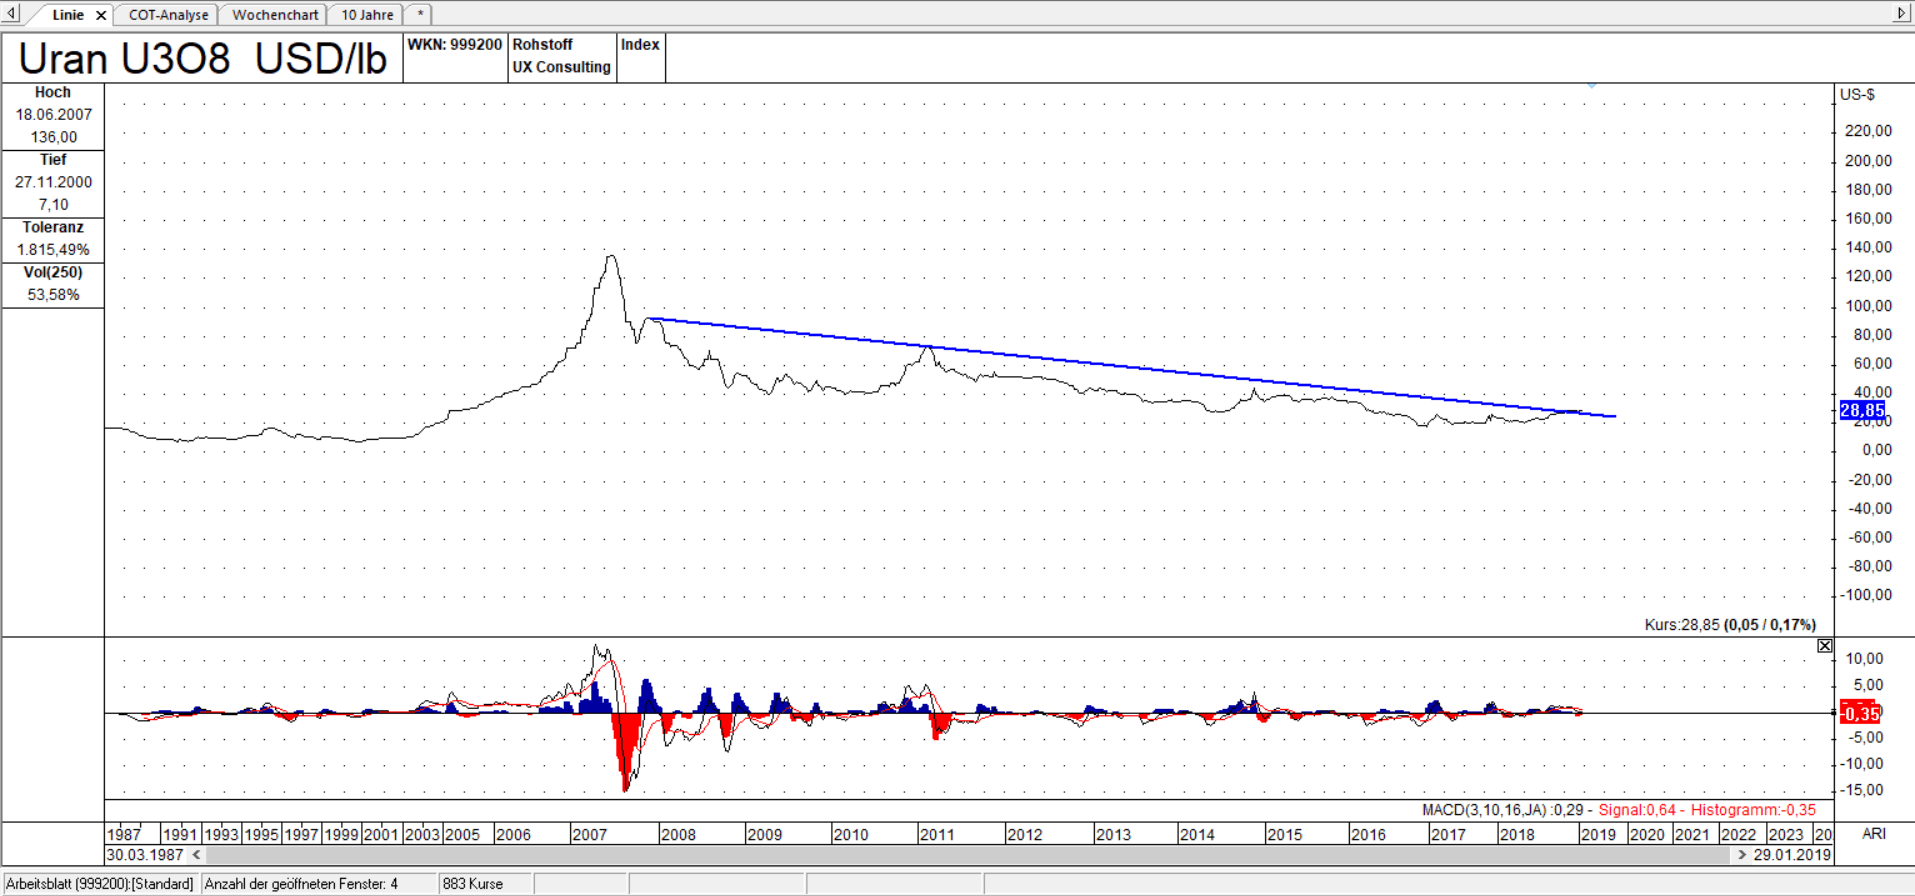 U3O8 Linienchart, linear: der Uranpreis notiert oberhalb der Trendlinie